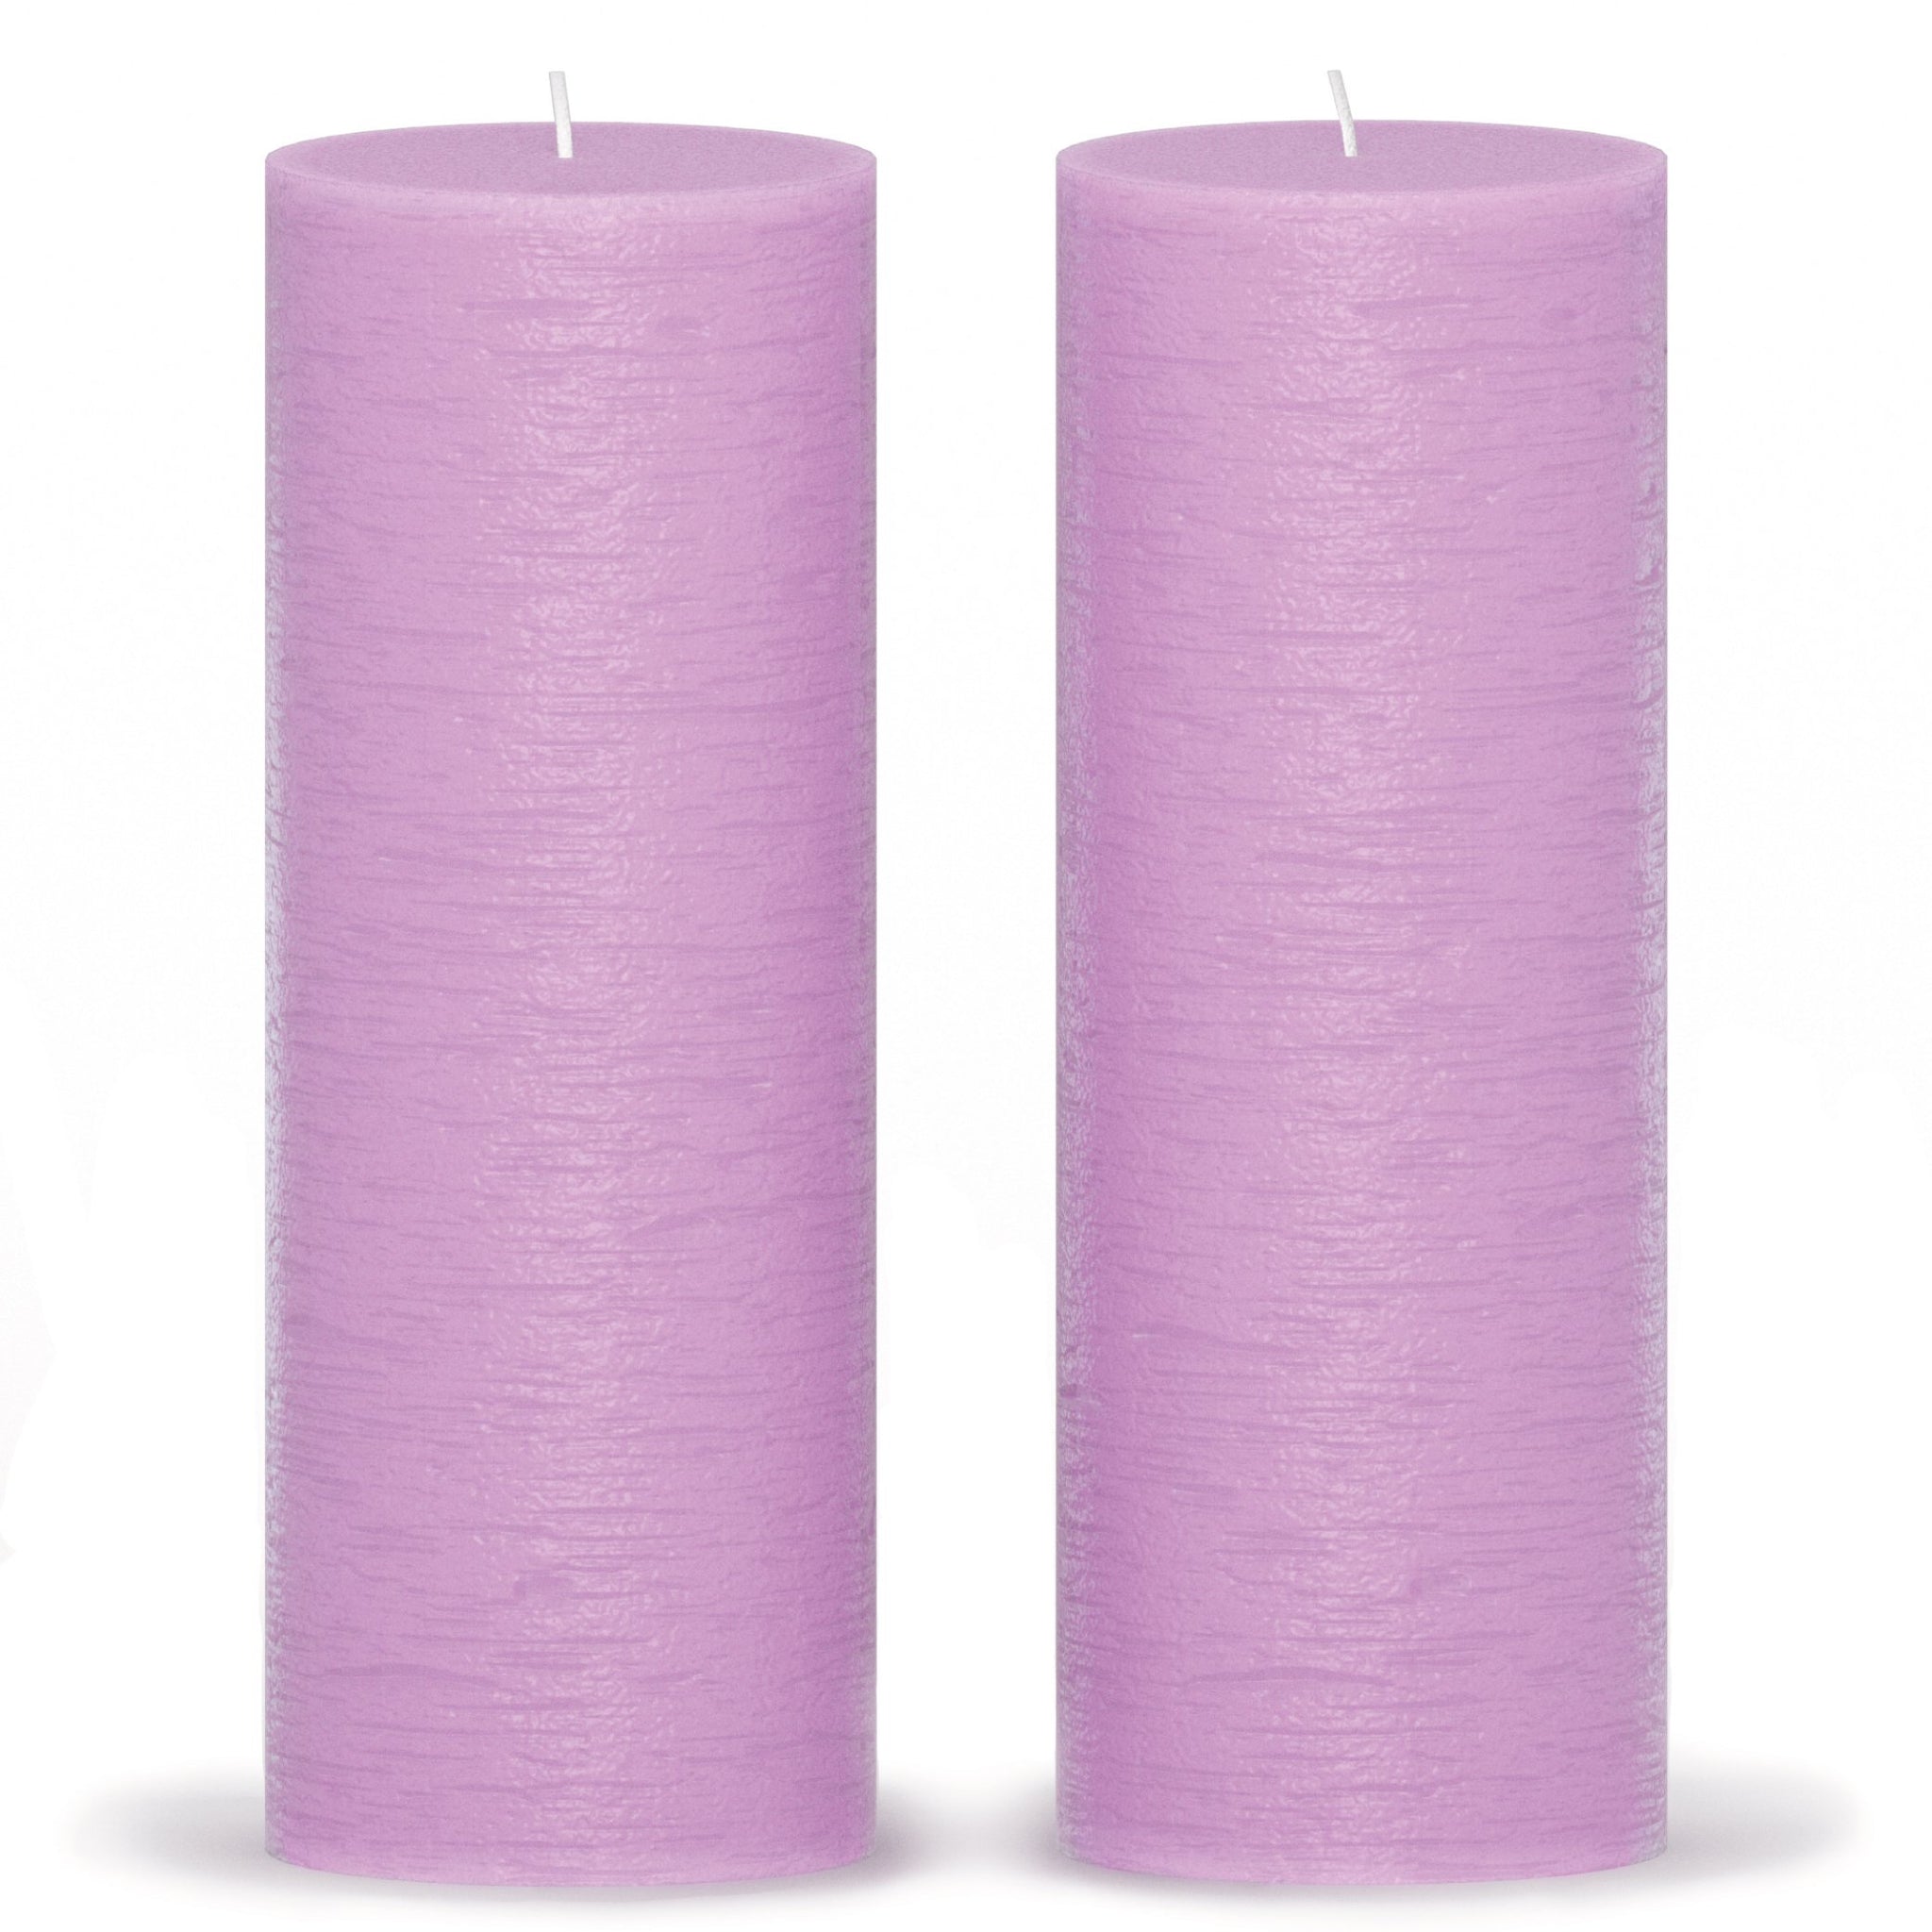 CANDWAX Lilac Pillar Candles 8" - Set of 2pcs